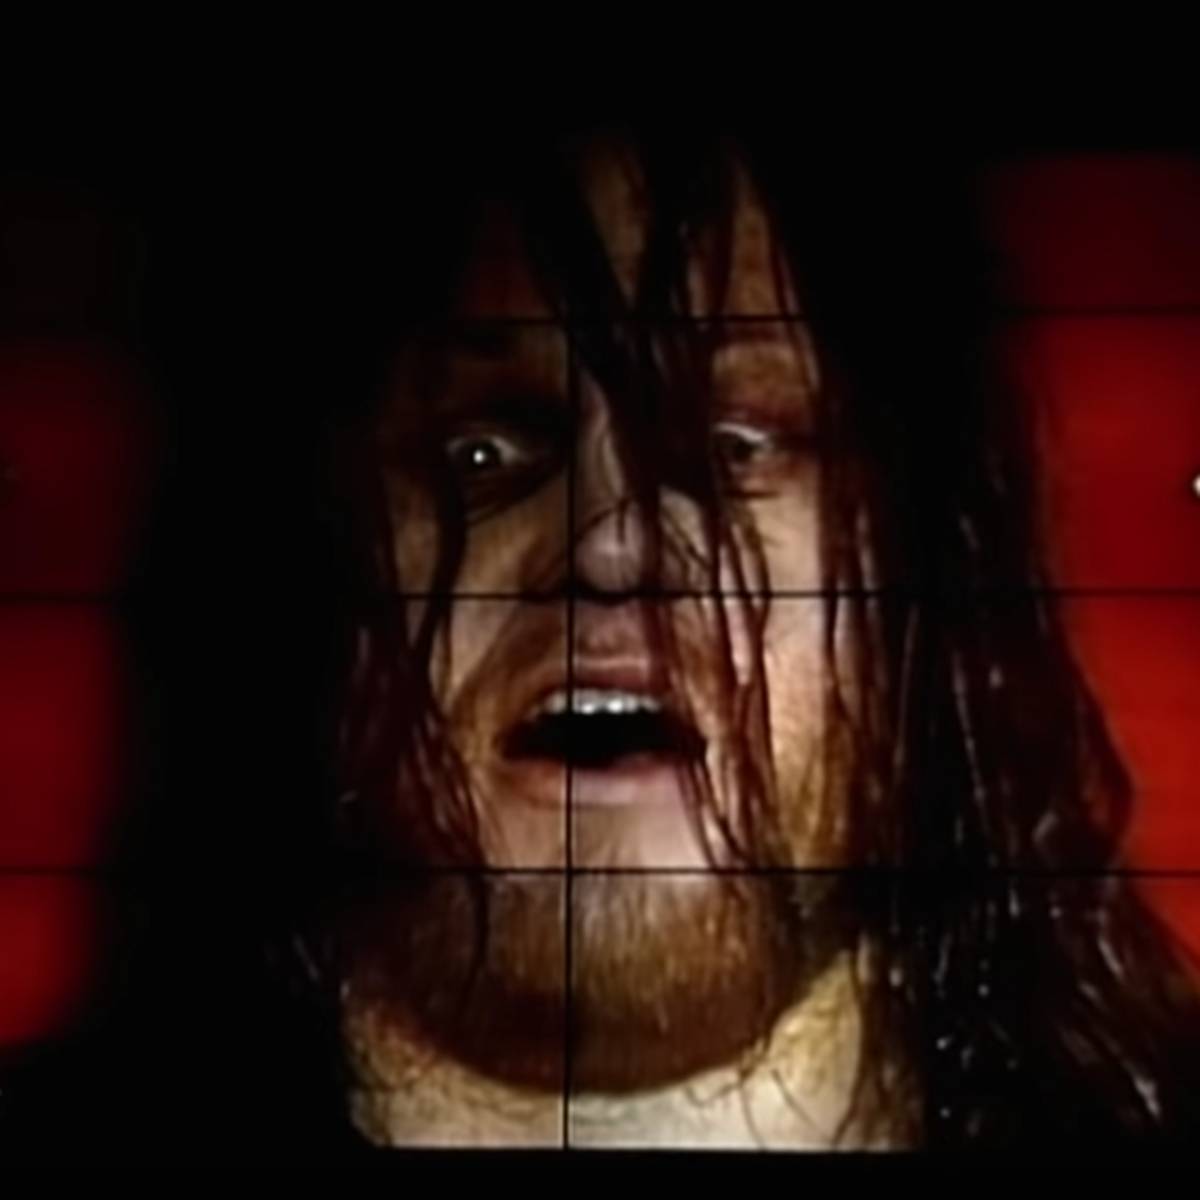 Beim Royal Rumble 1994 schockte WWE seine Fans mit einem denkwürdigen Grusel-Auftritt des Undertaker. SPORT1 erklärt die Geschichte dahinter.